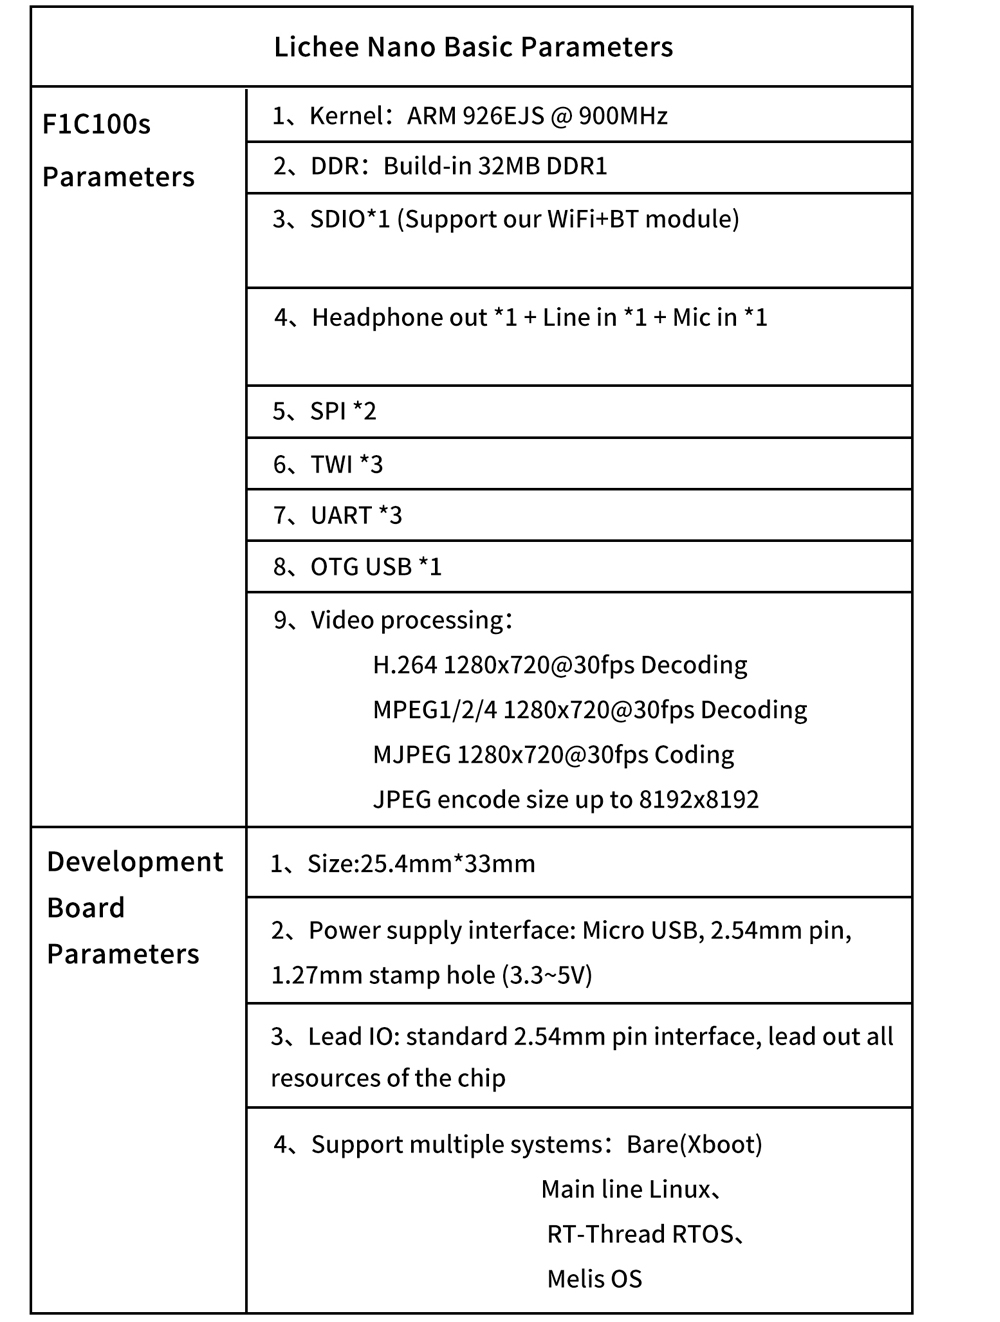 Lichee-Nano-Motherboard-F1c100s-Development-Board-Linux-Programming-Learning-1973498-3